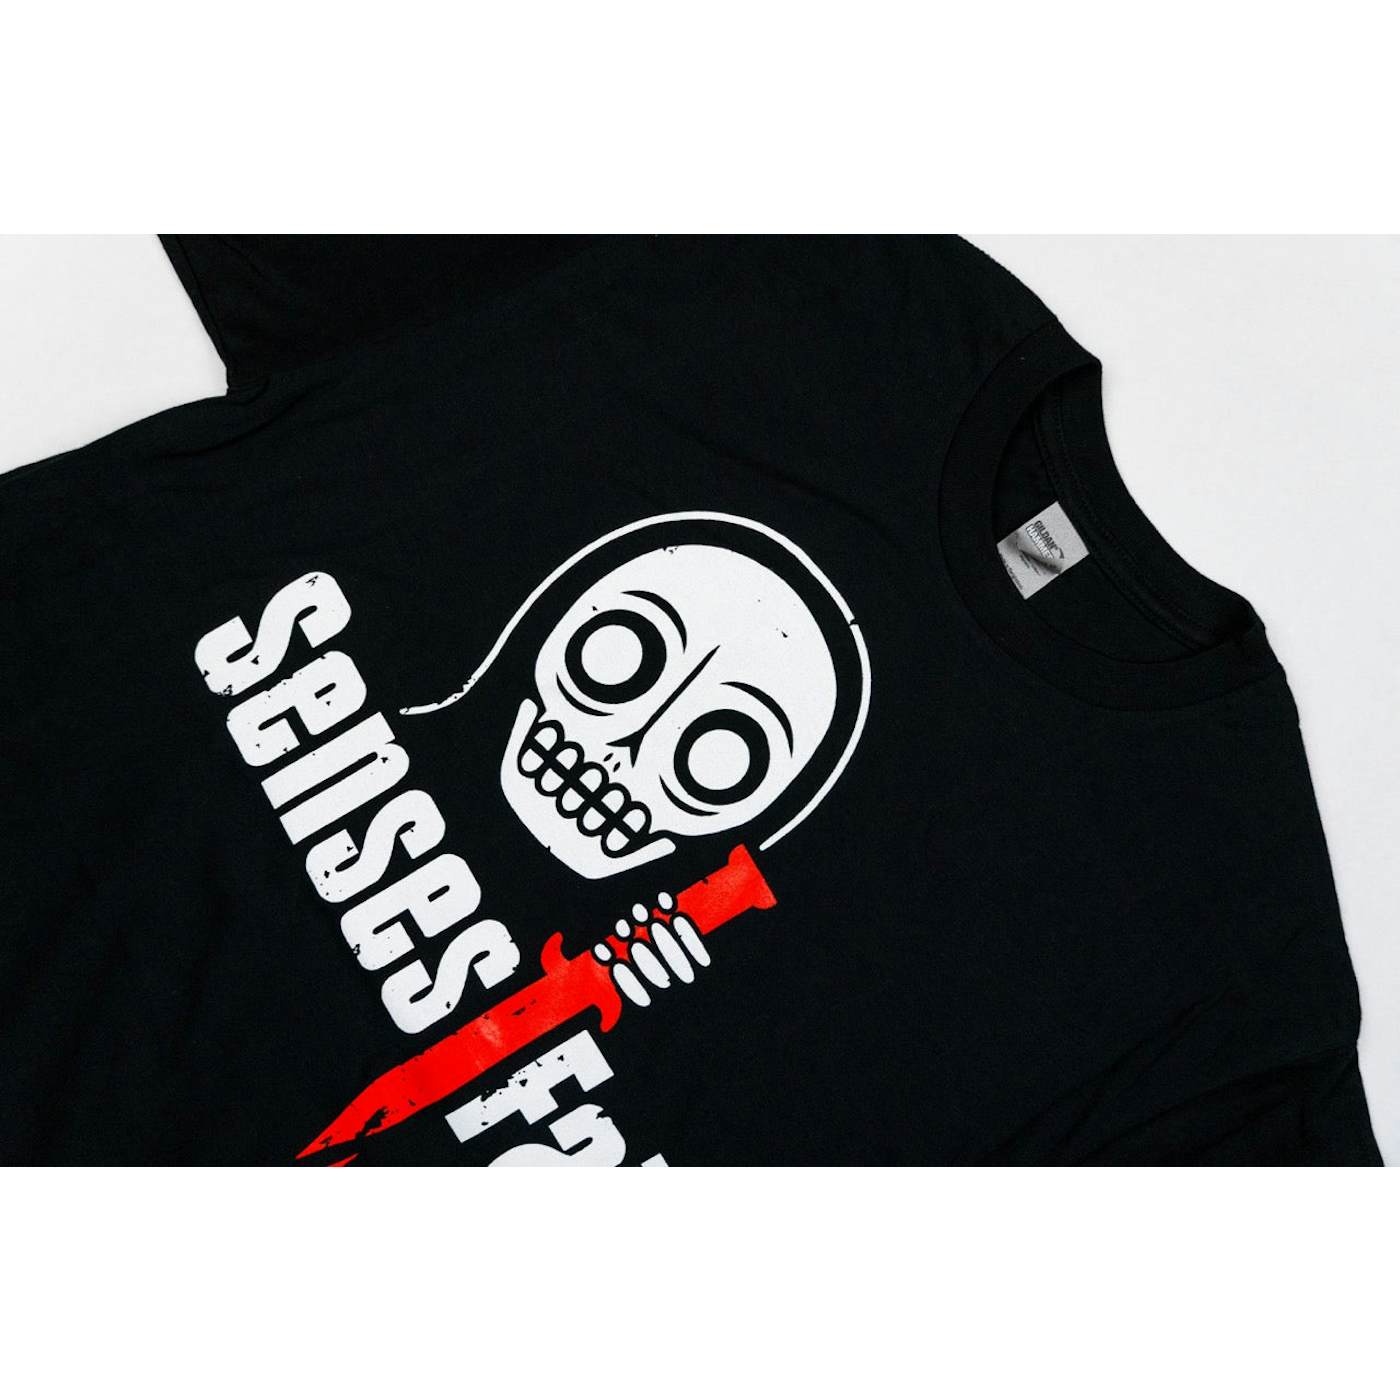 Senses Fail Knife Black T-Shirt